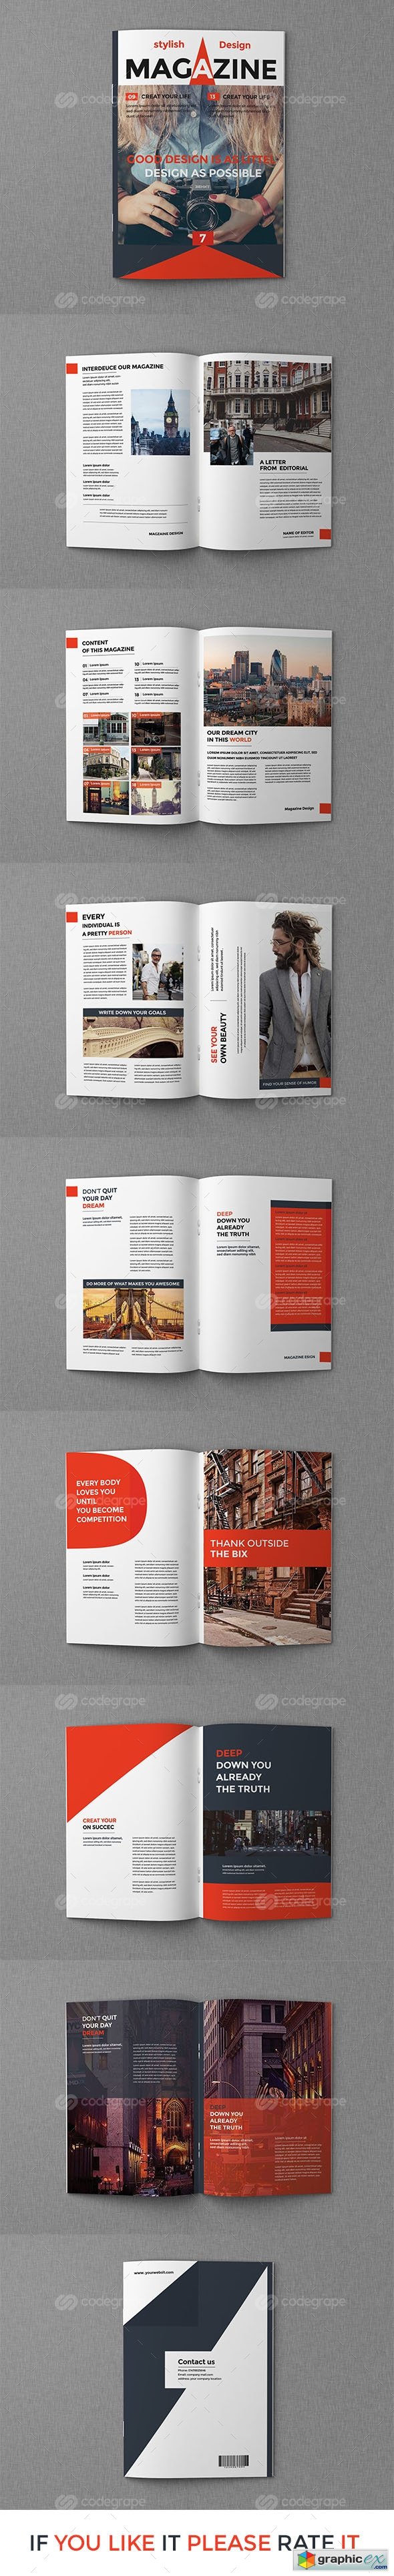 Magazine Design Vol2 10684